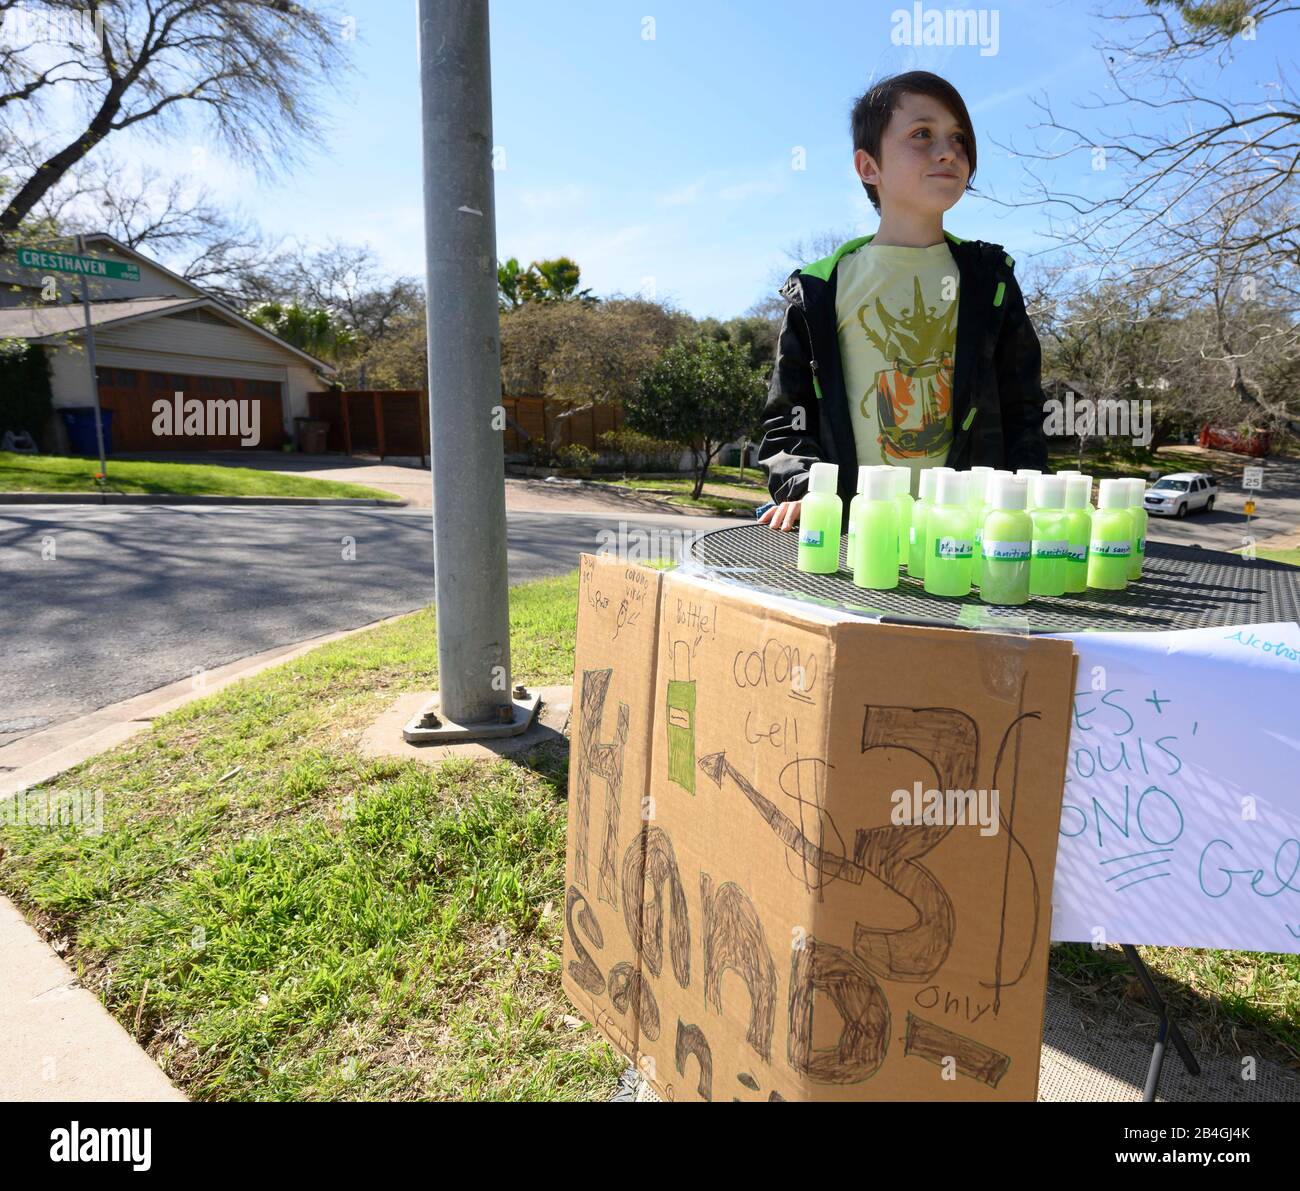 Le stand de désinfectant pour les mains remplace le stand de limonade alors que L'entrepreneur Miles Miller vend de l'aseptisant pour les mains maison pour aider à combattre le coronavirus à 3 $ la bouteille dans son Austin, Texas, quartier après l'école. Banque D'Images